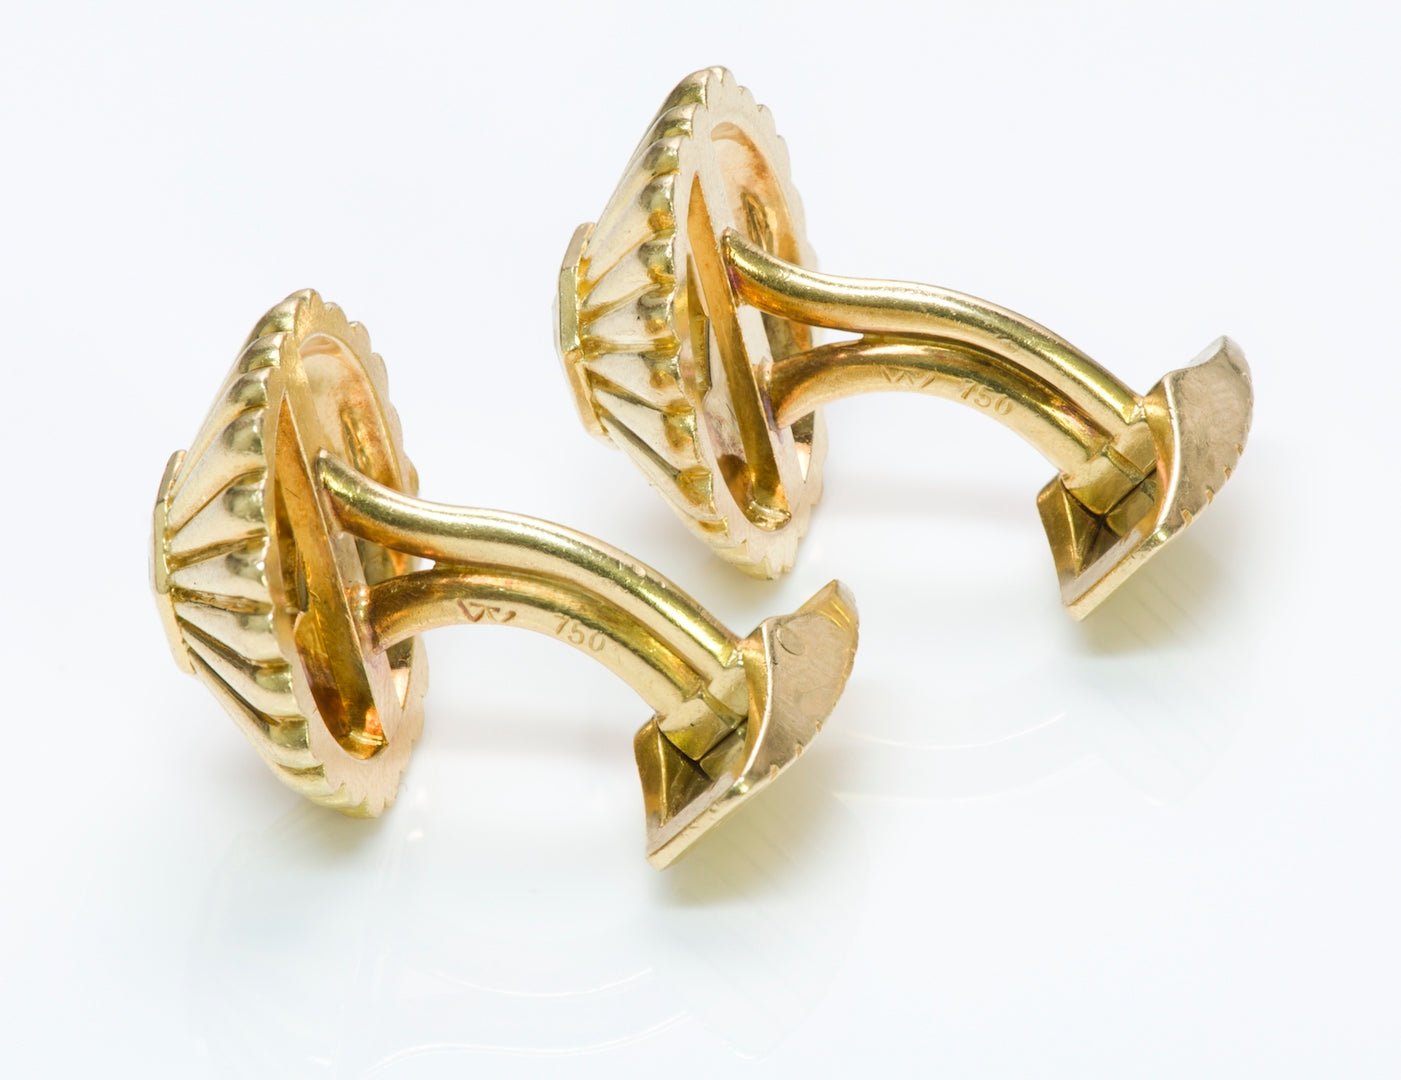 Vintage Gold Fancy Cut Diamond Cufflinks